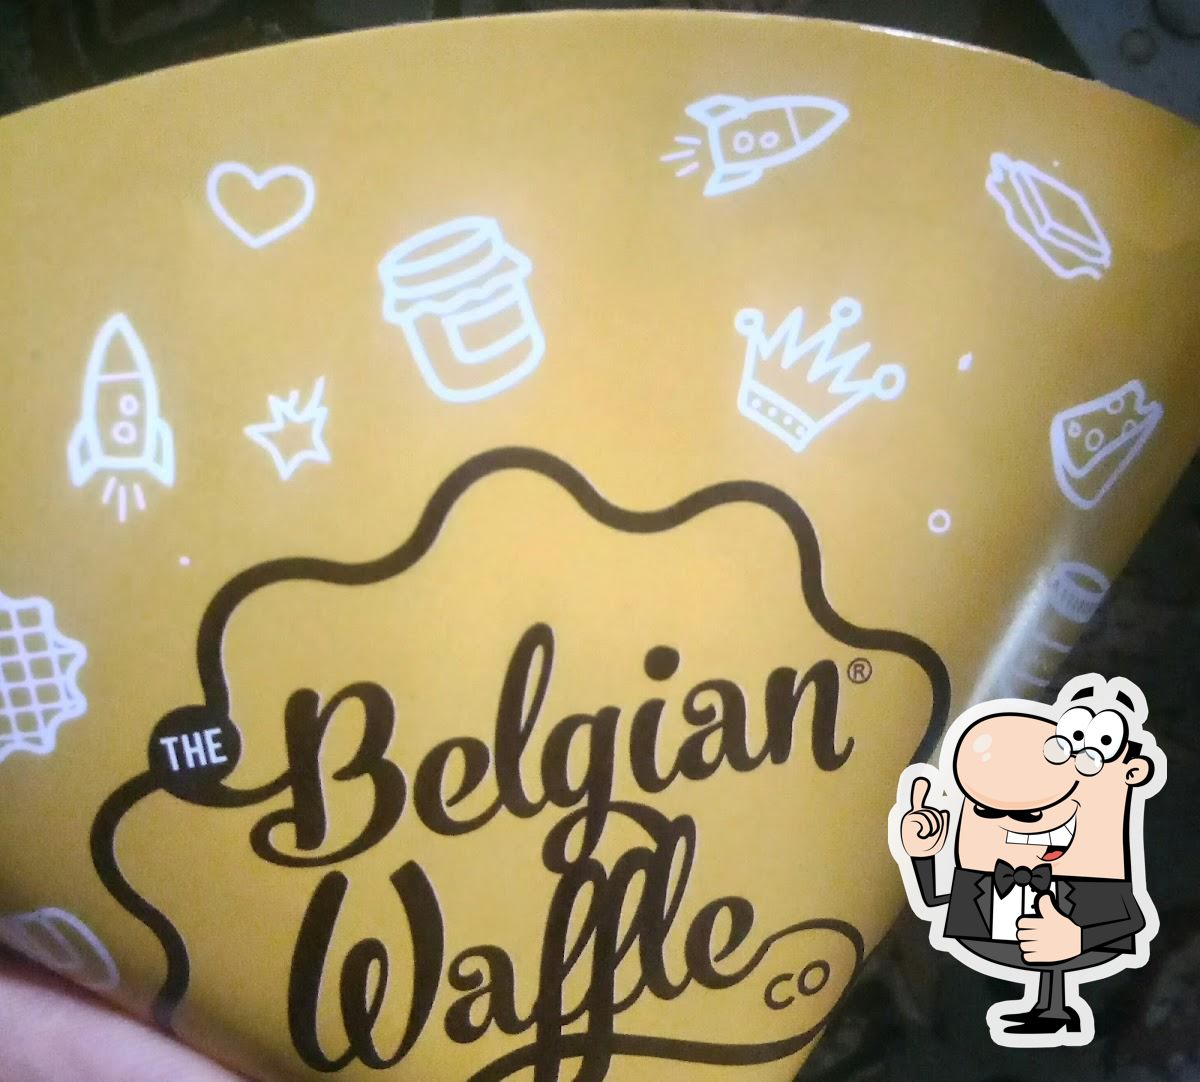 The Belgian Waffle Co Sector 9 Panchkula.